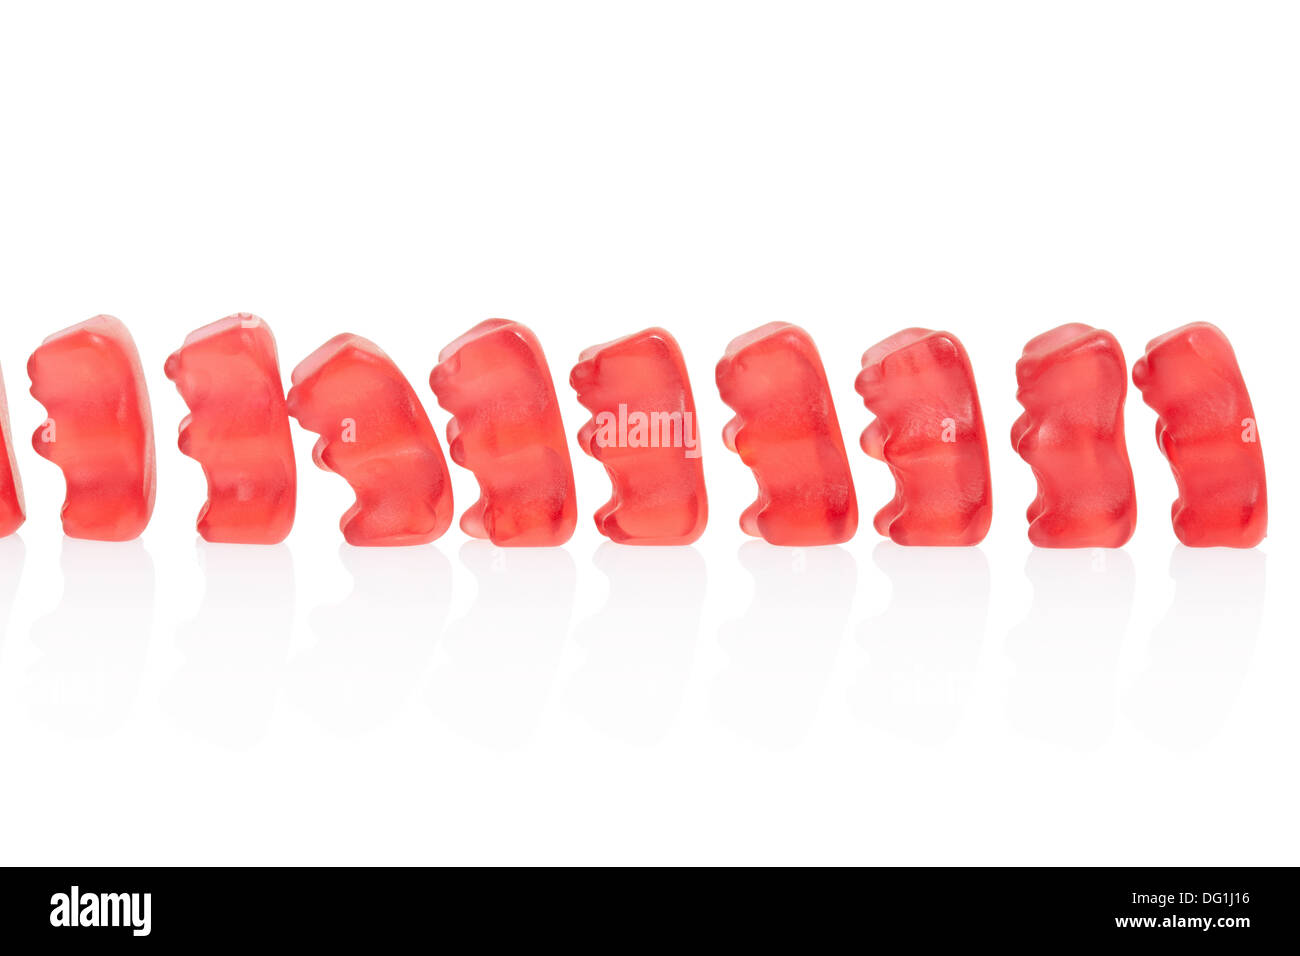 Gummy bears candies queue Stock Photo